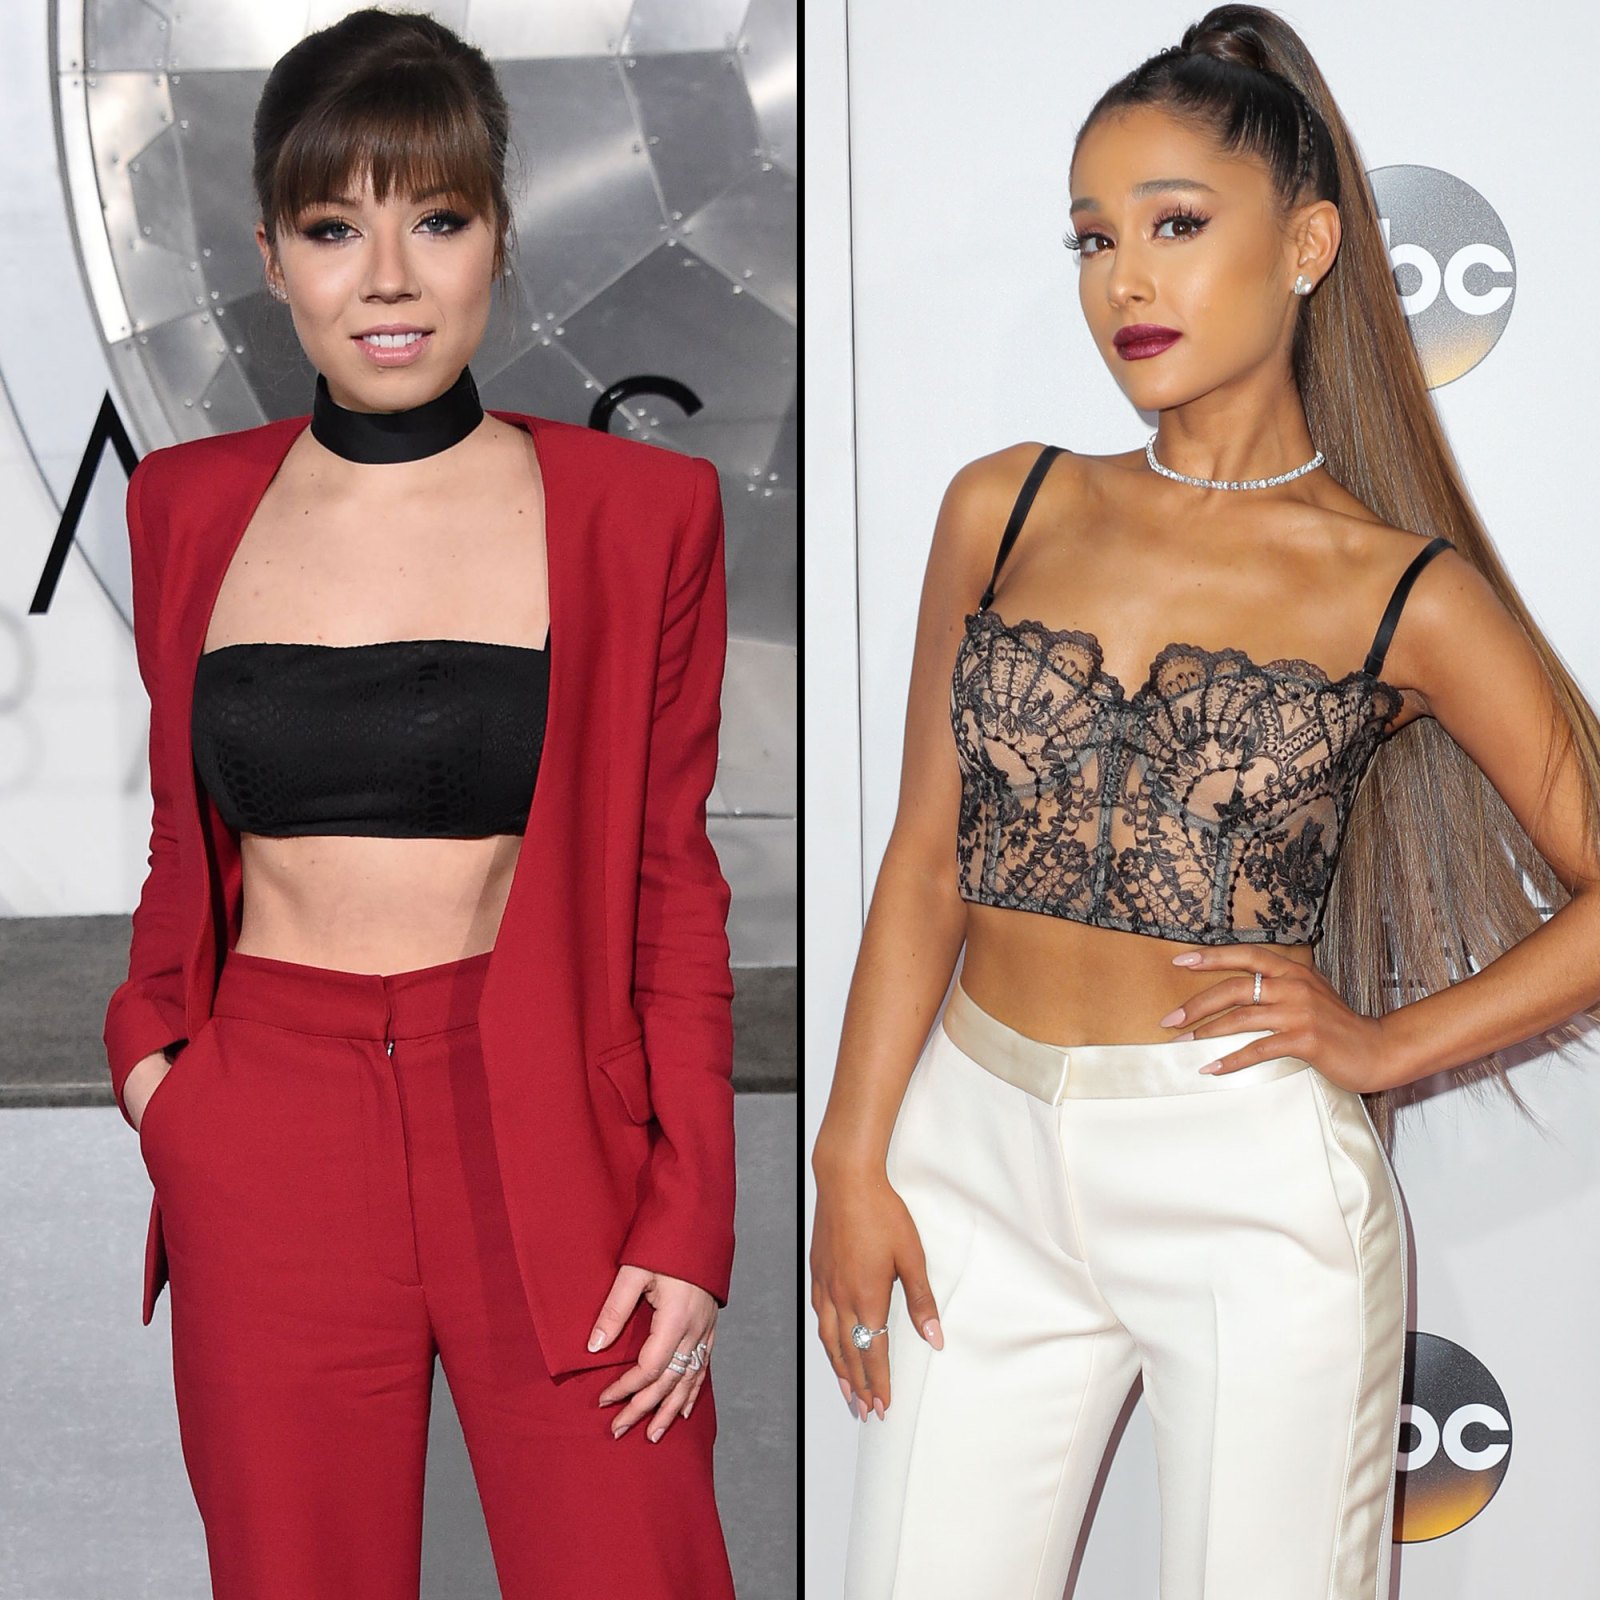 Sam & Cat' Drama: Jennette McCurdy, Ariana Grande Feud, More